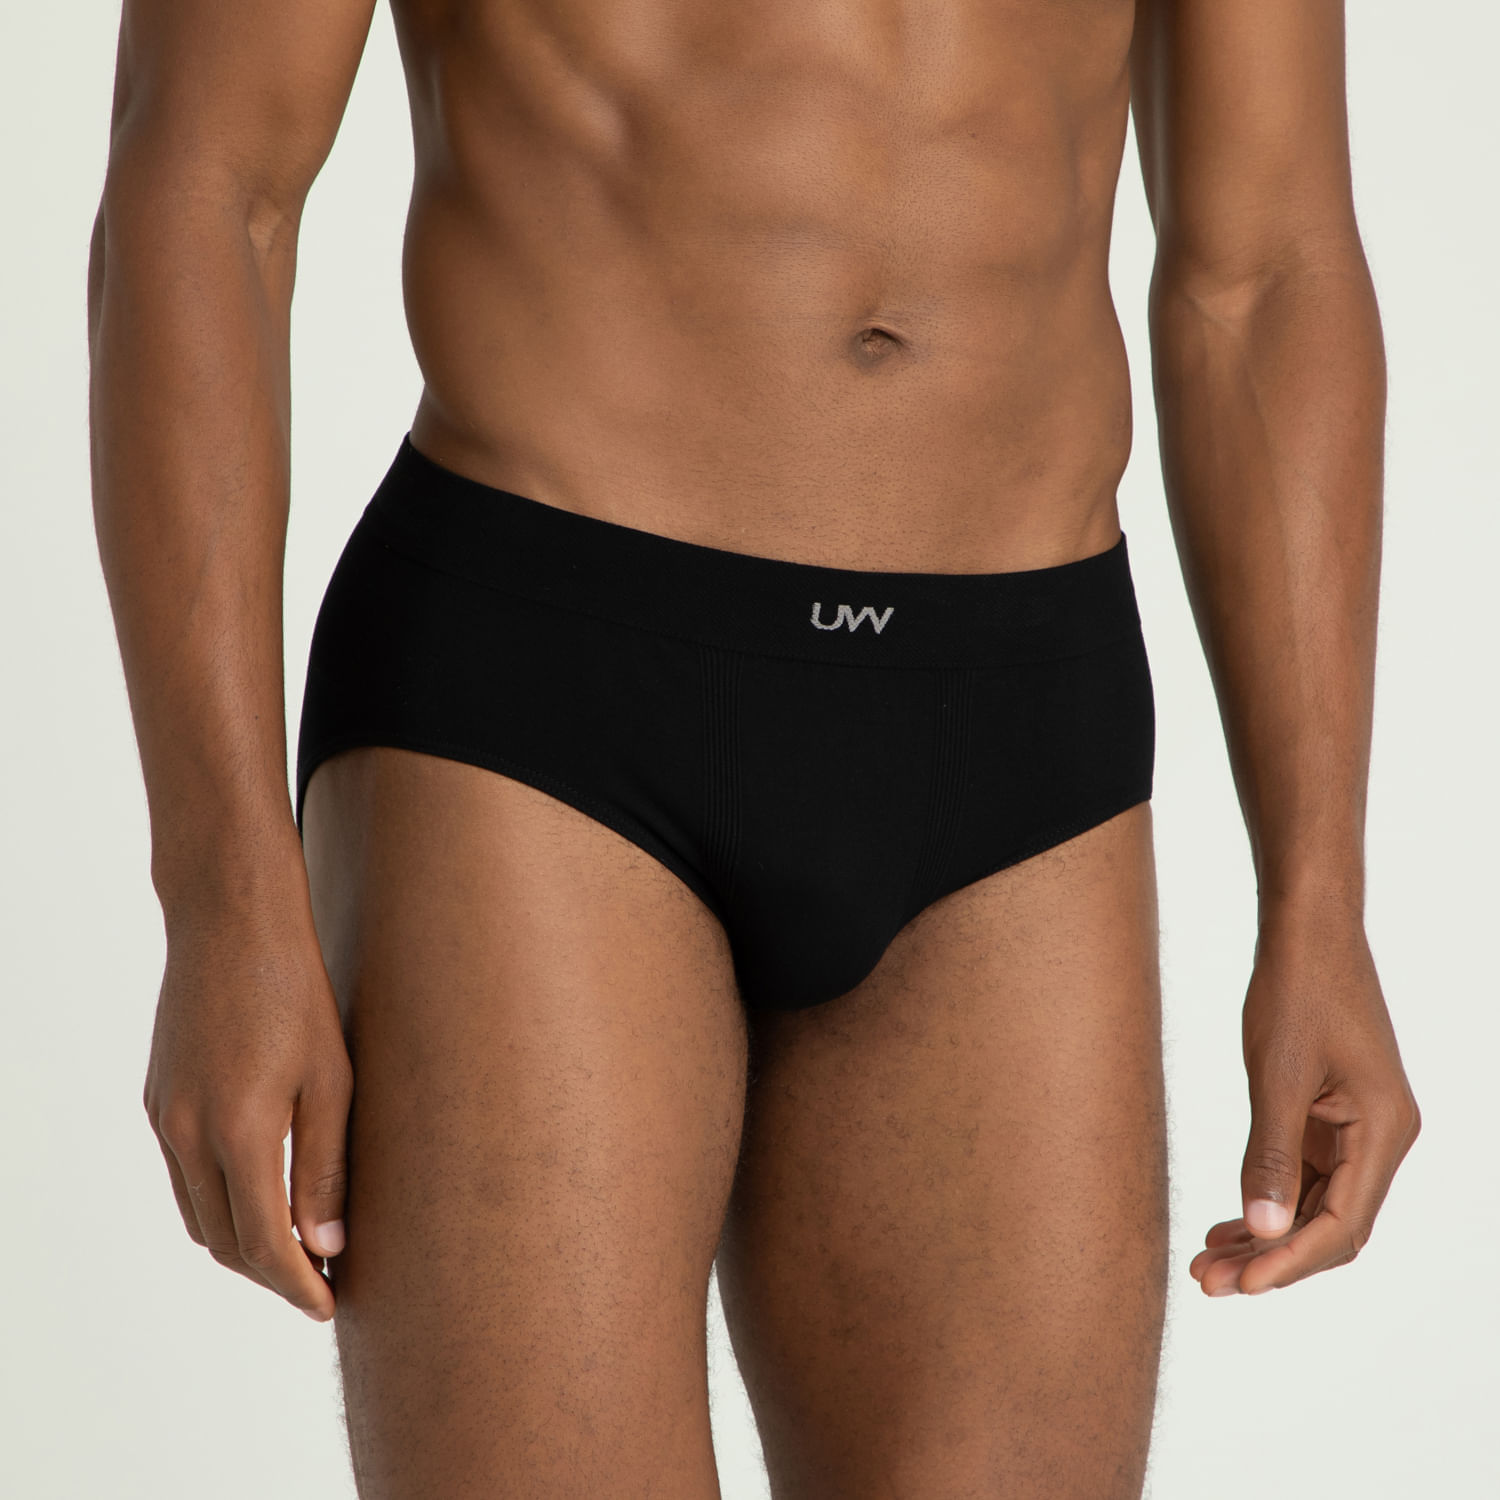 Kit Cueca Slip Underwear 6 Peças - Preto+Branco